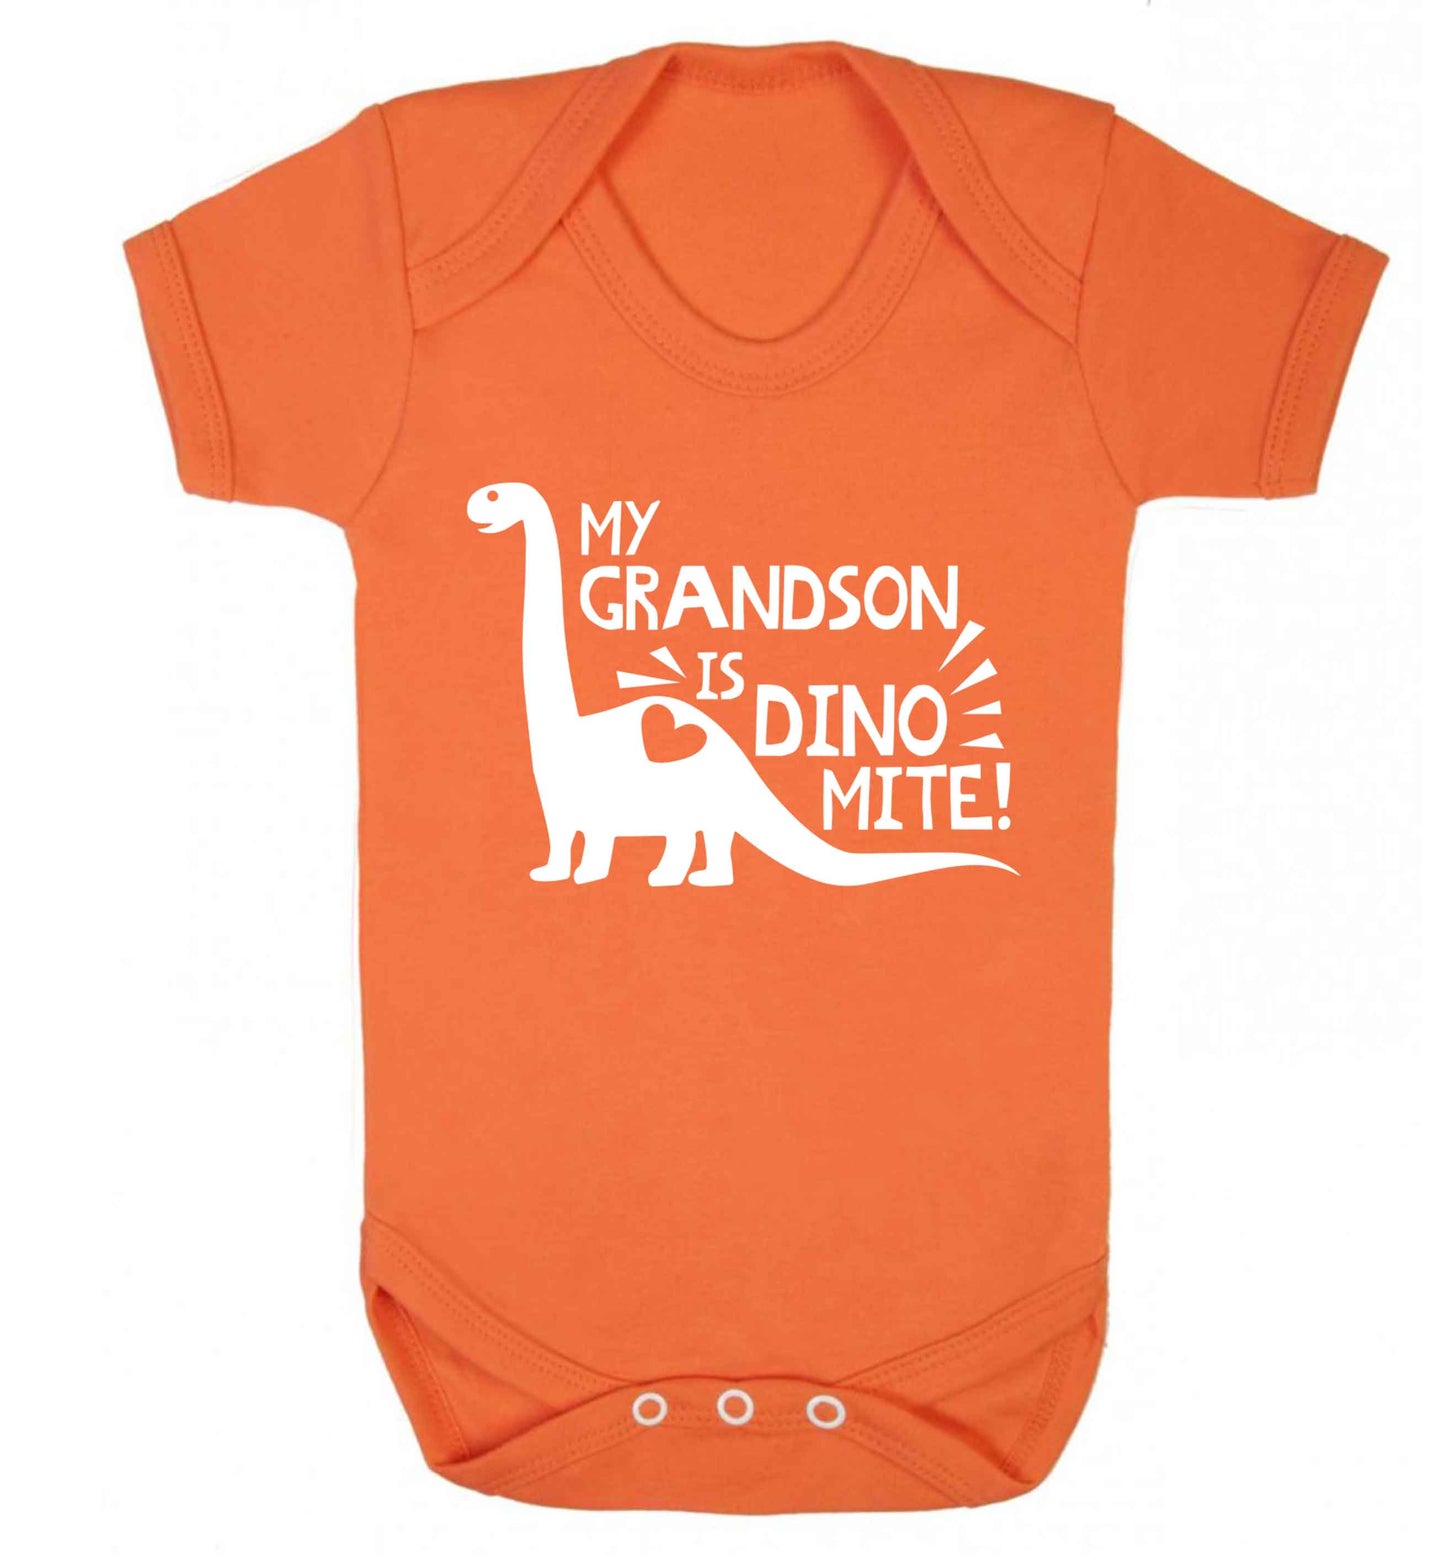 My grandson is dinomite! Baby Vest orange 18-24 months